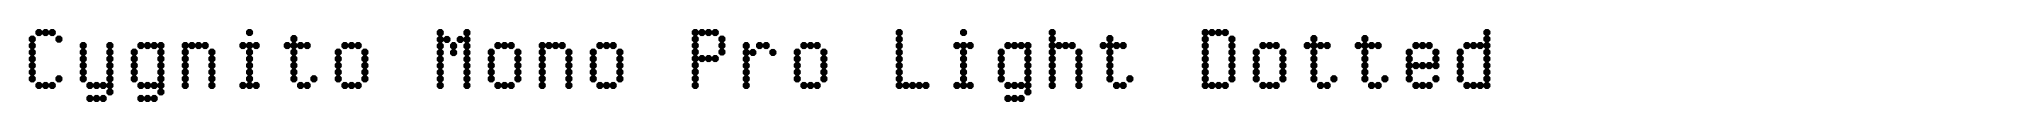 Cygnito Mono Pro Light Dotted image